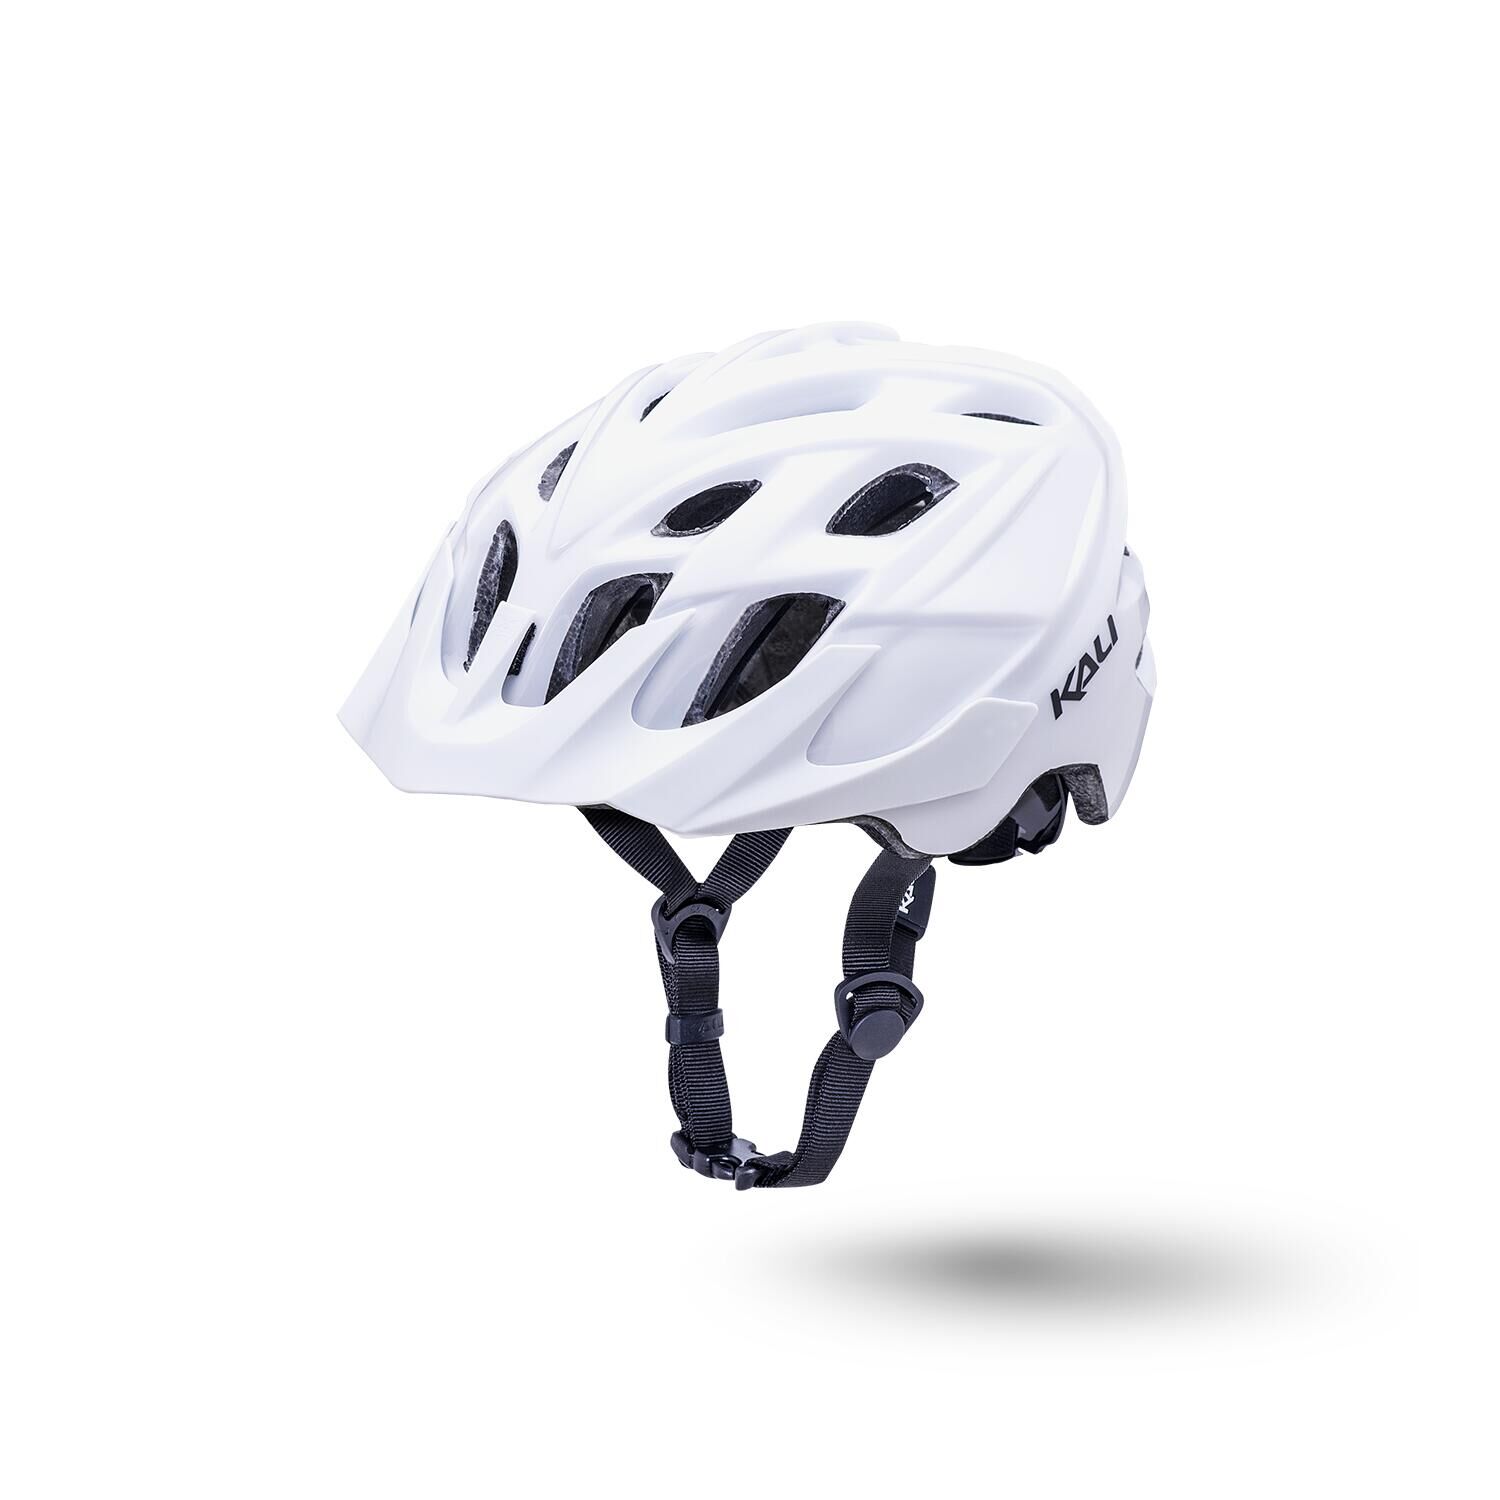 KALI Kali Chakra Solo Trail Helmet - Solid White